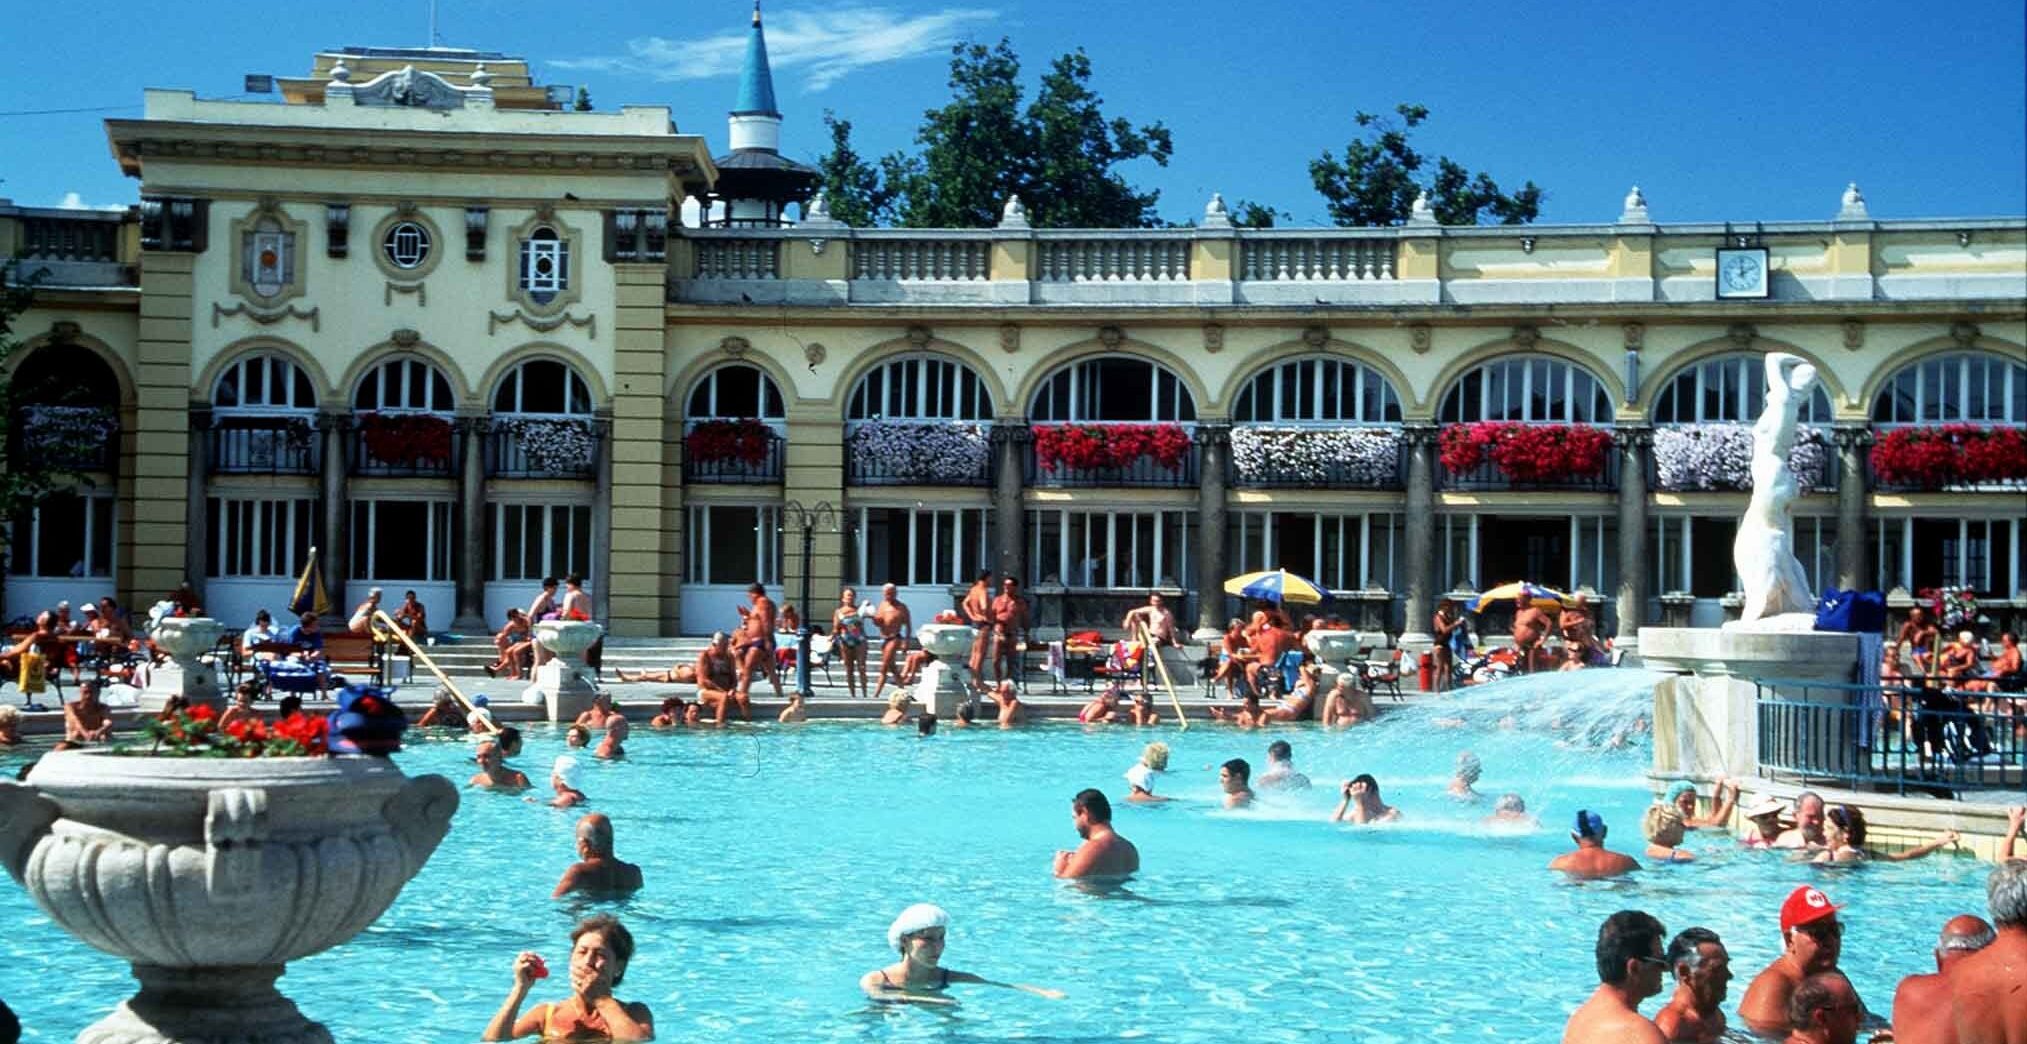 Baths at Szecheny in Budapest